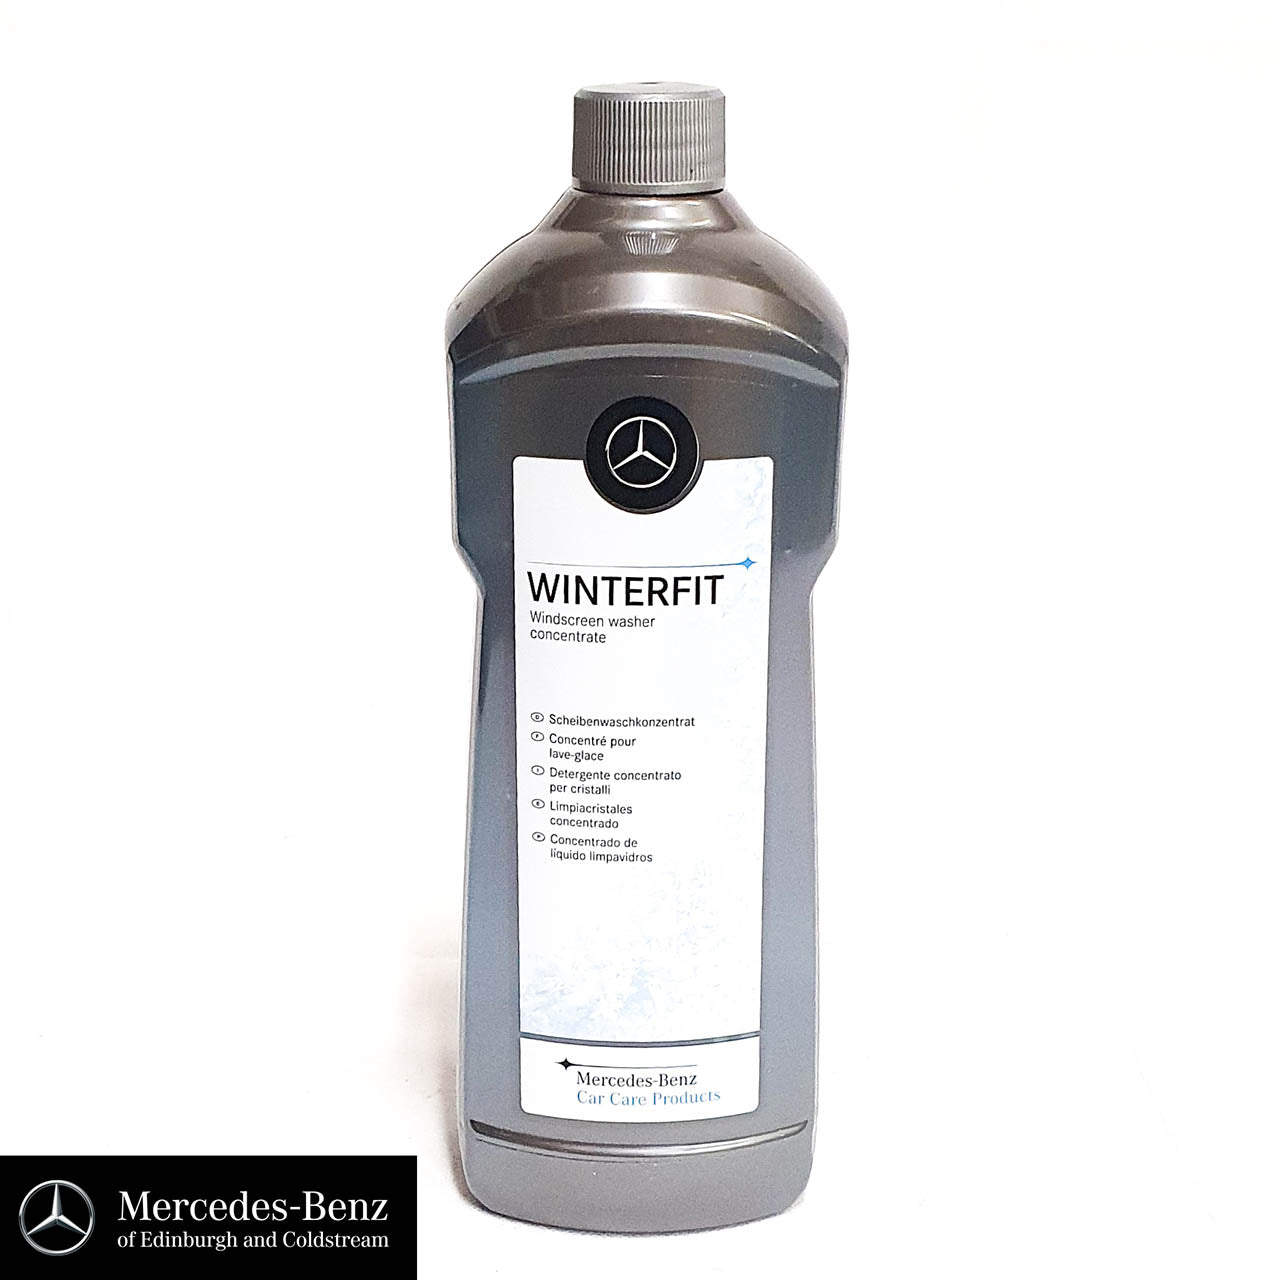 Genuine Mercedes-Benz engine coolant / antifreeze 325.6 RED – Mercedes  Genuine Parts